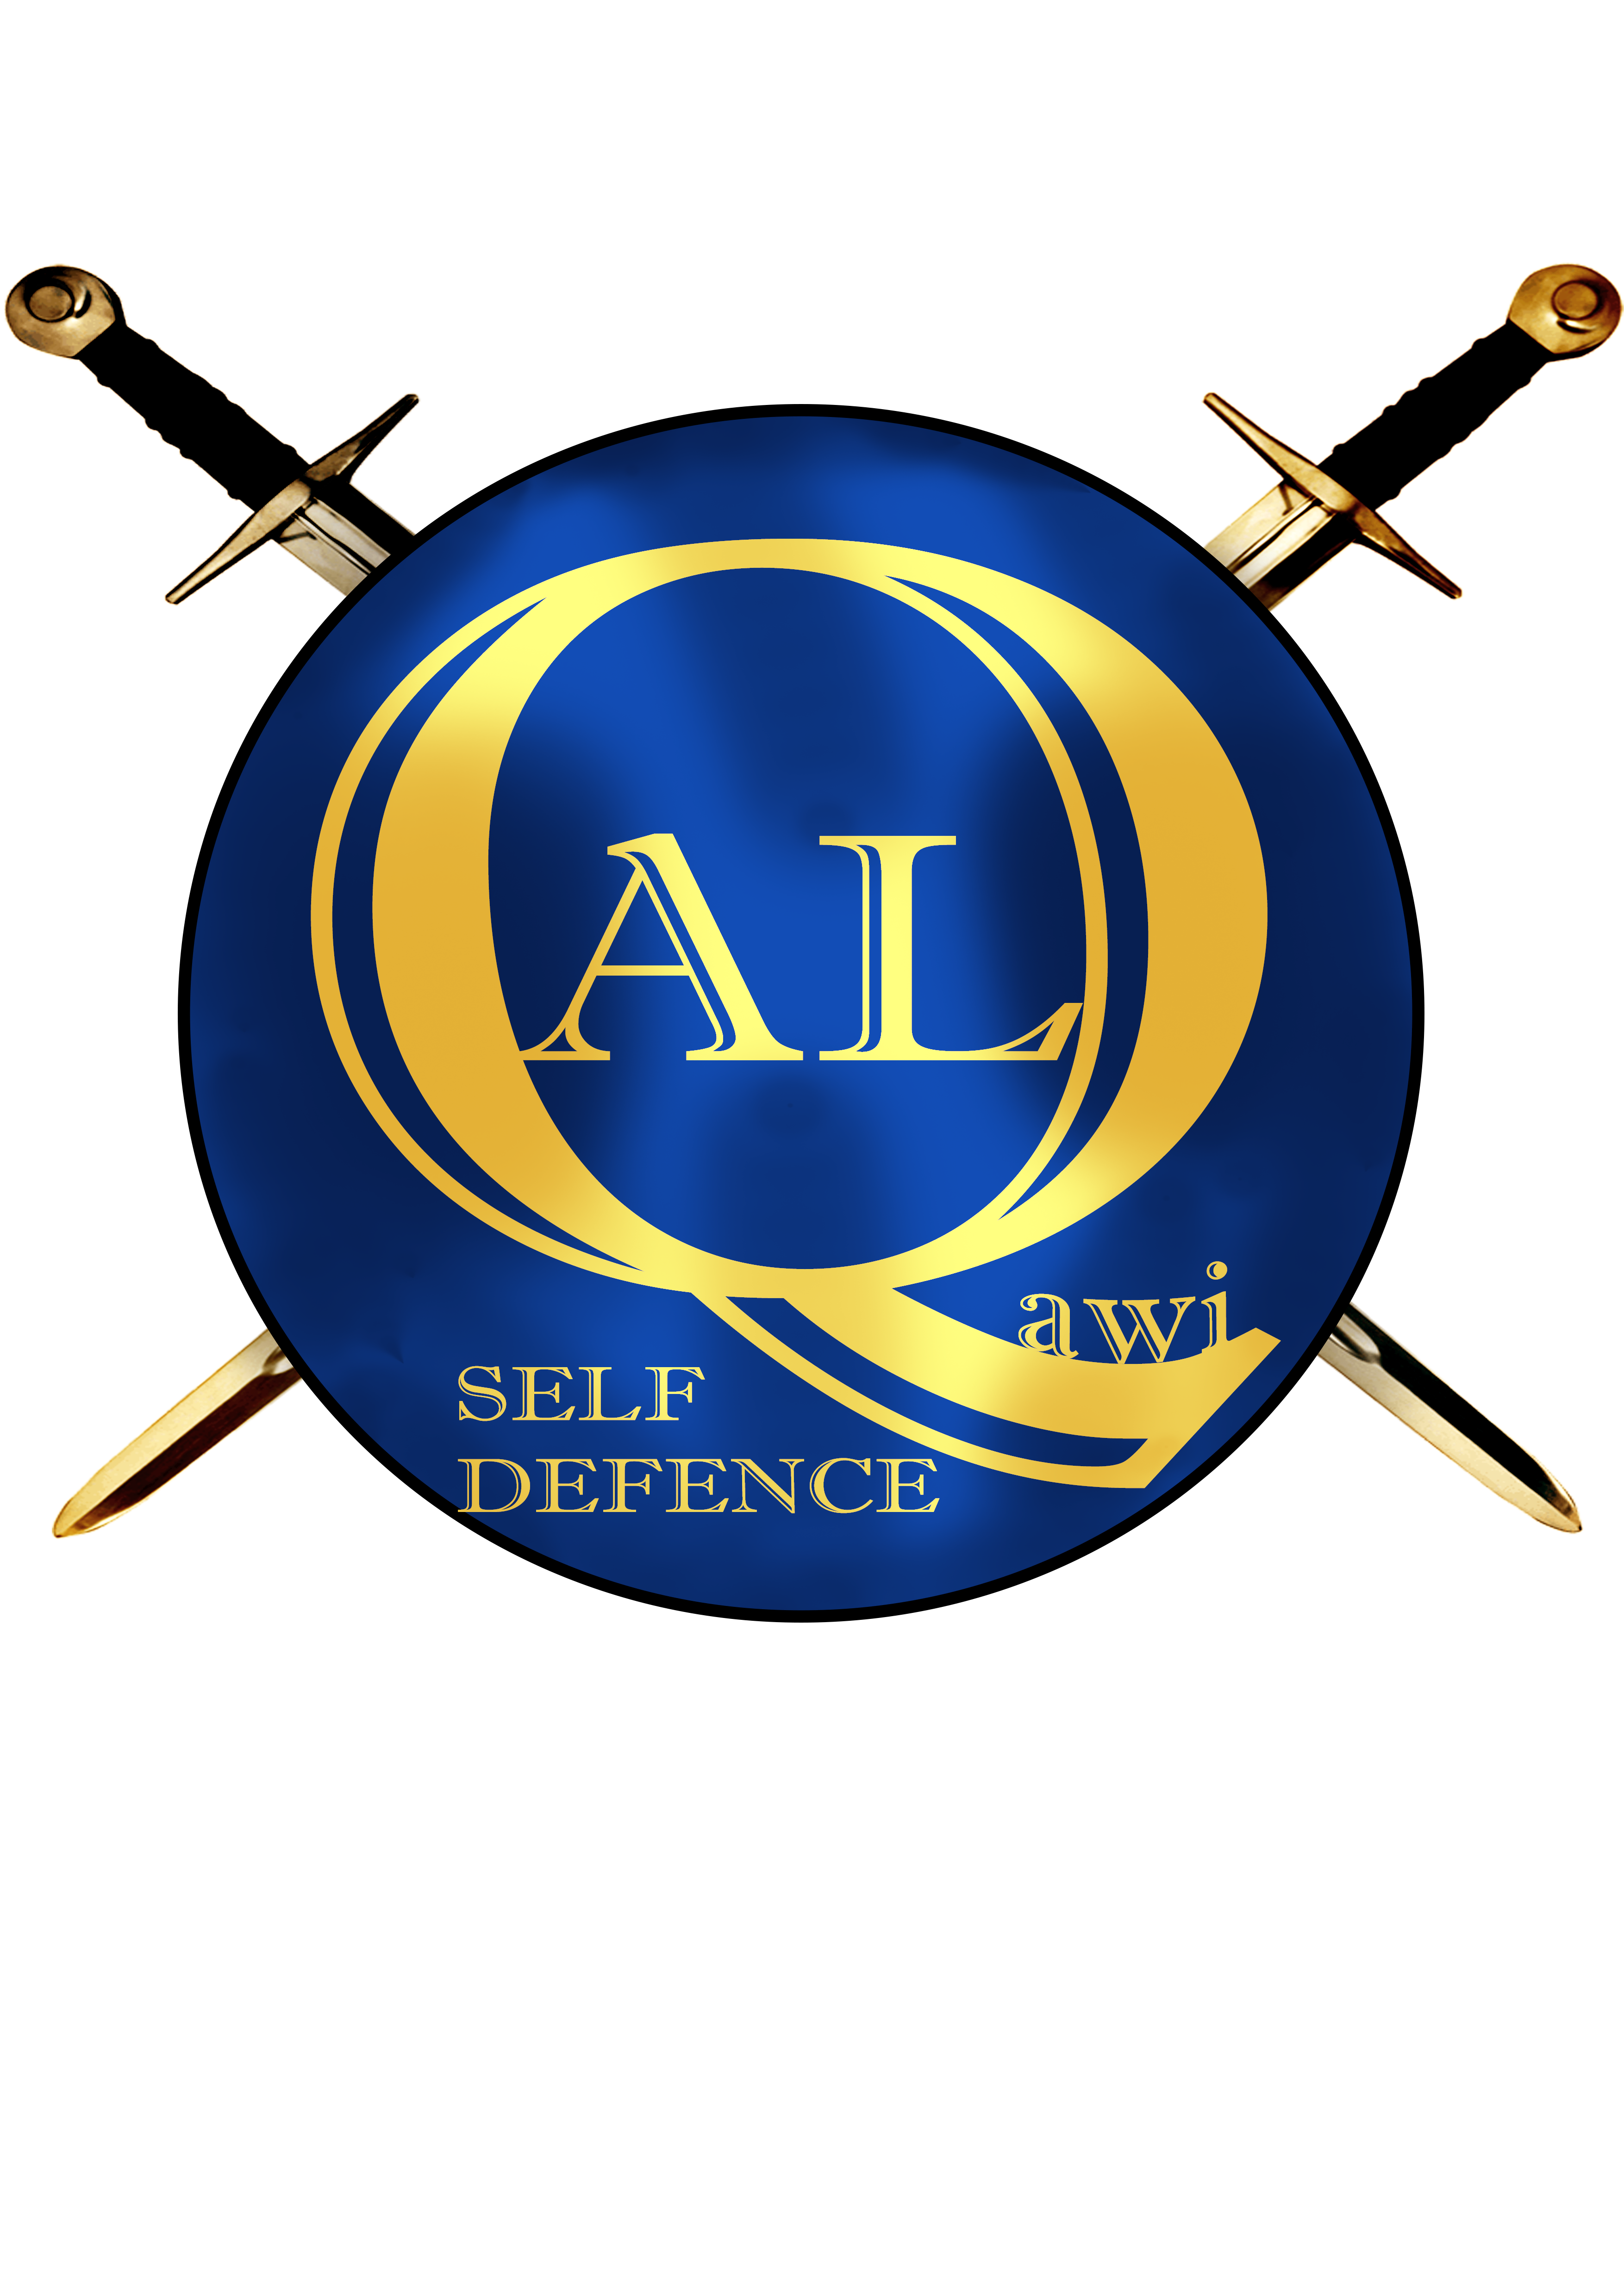 Al Qawi Self Defence